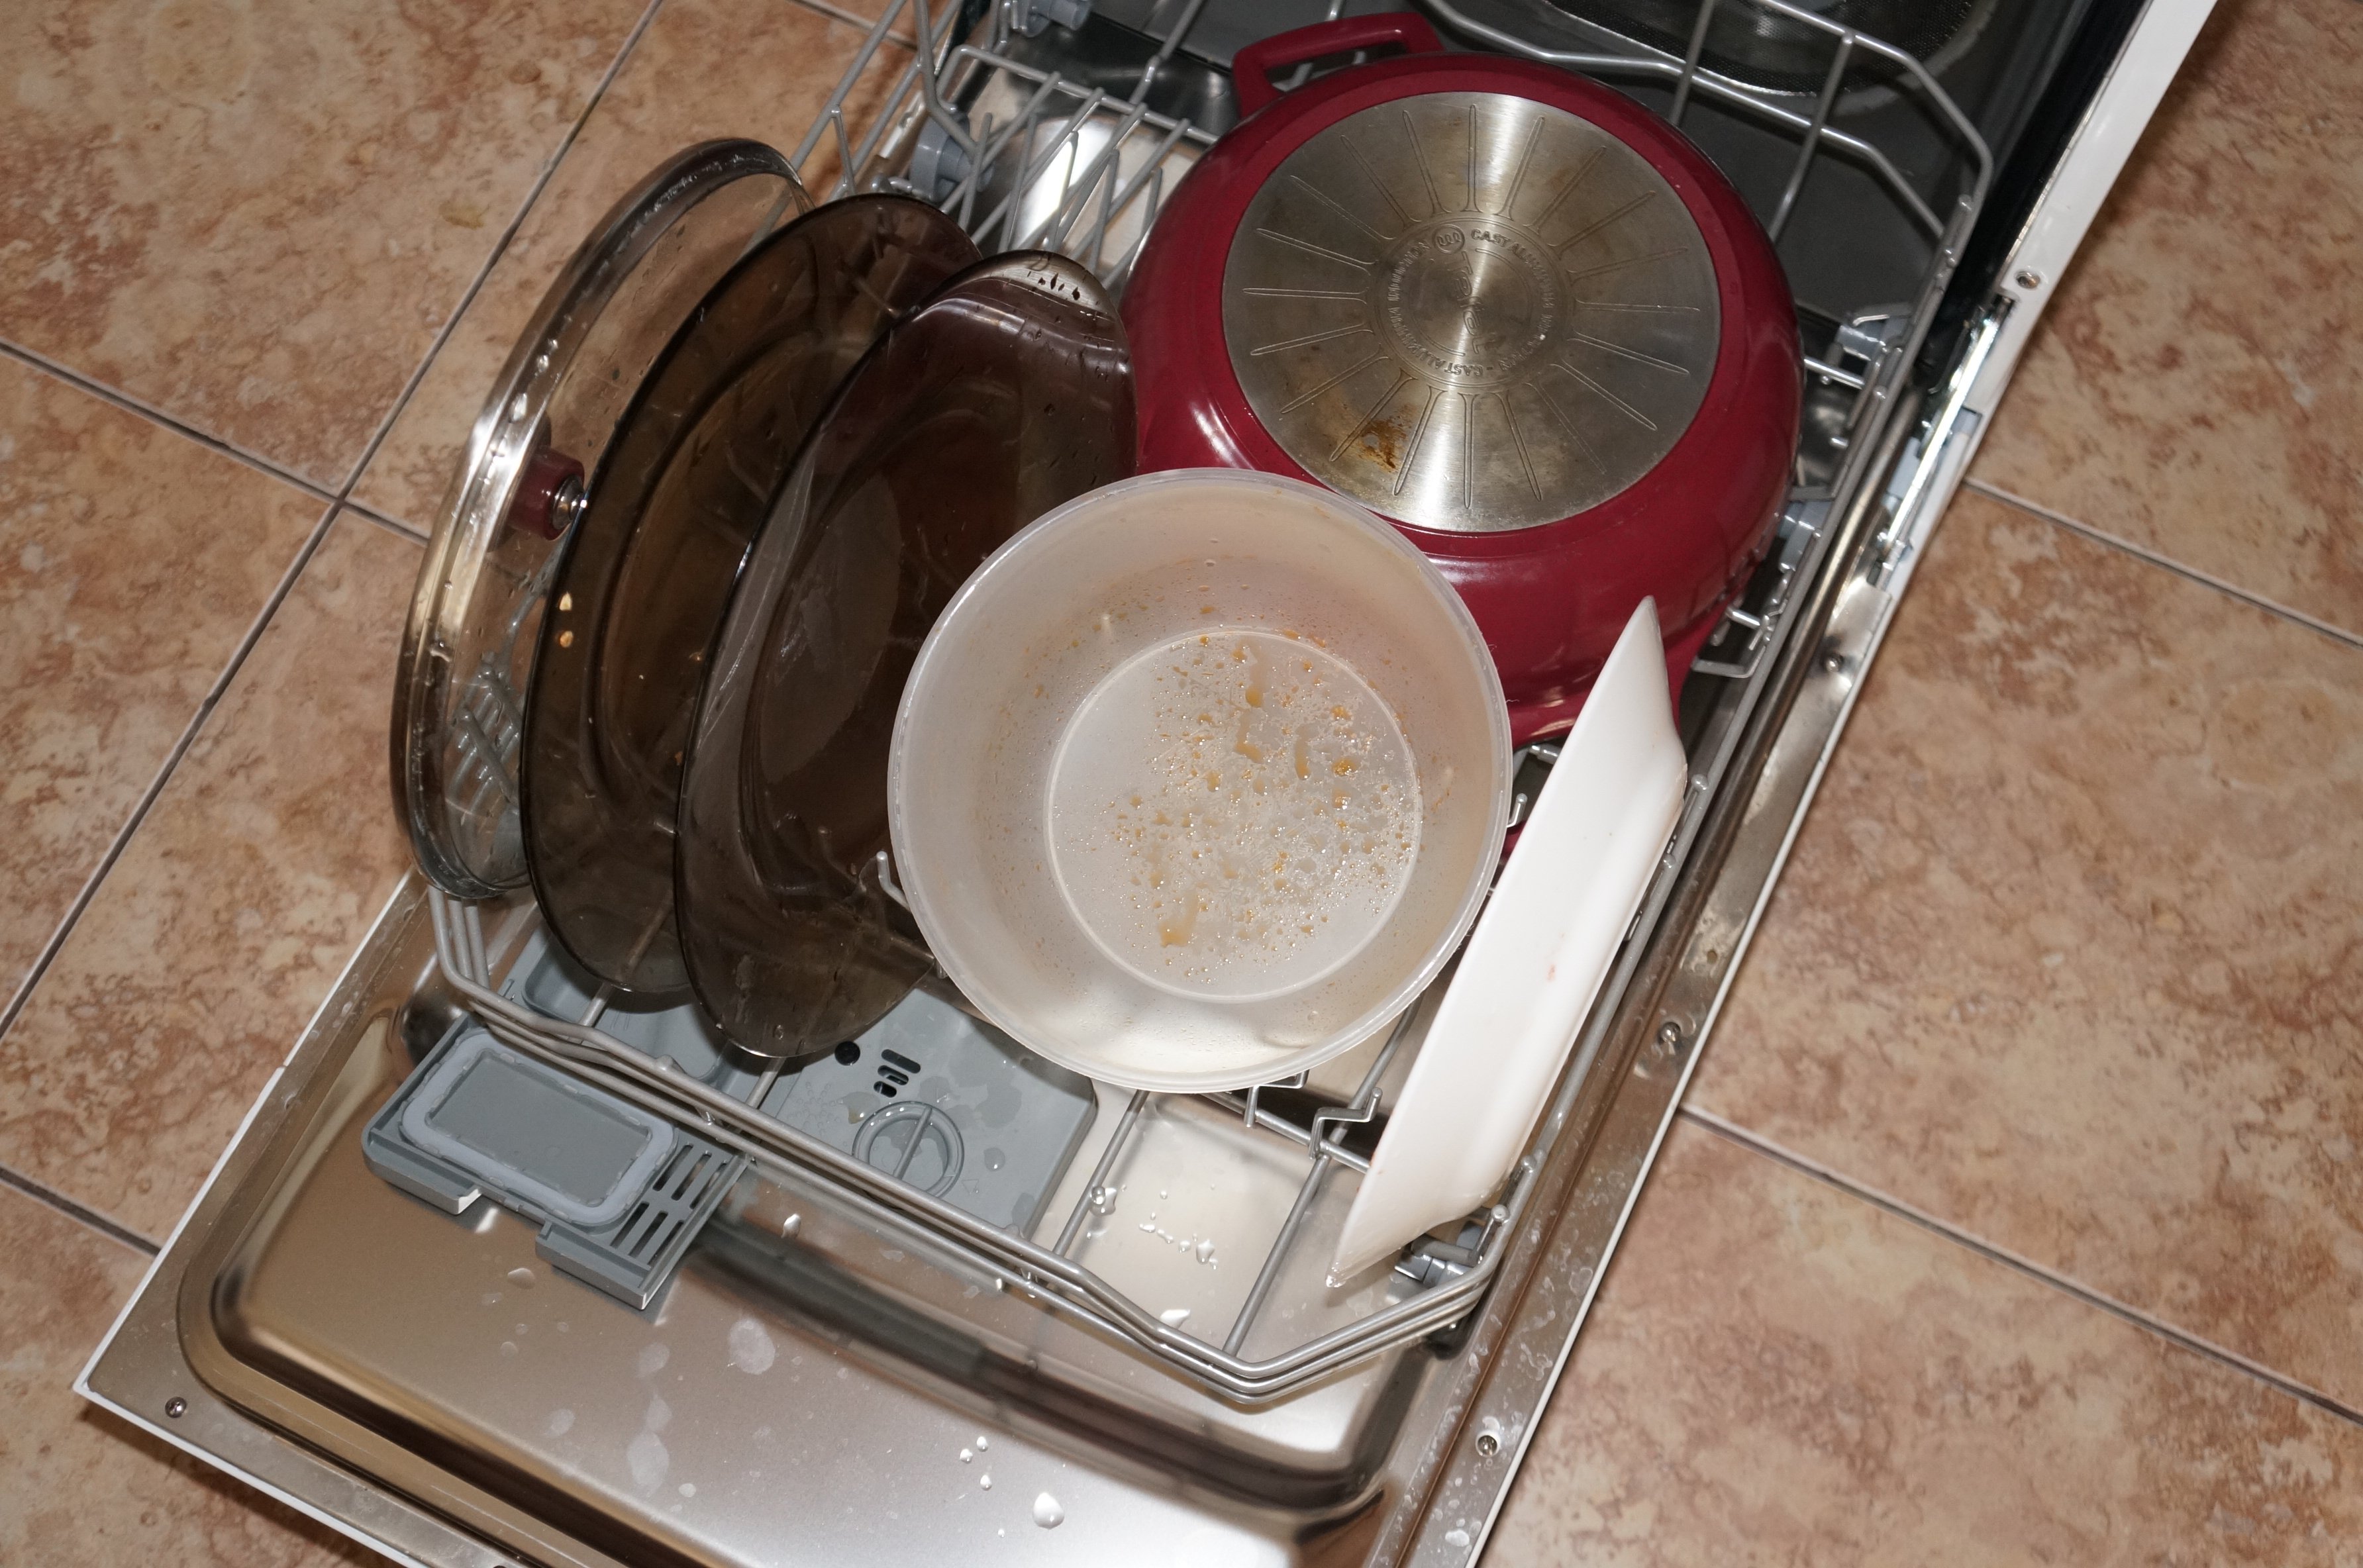 Кастрюли можно мыть в посудомойке. Кастрюля в посудомоечной машине. Посудомоечная машина для кастрюль и сковородок. Кастрюли в посудомойке. Посуда в посудомойке.